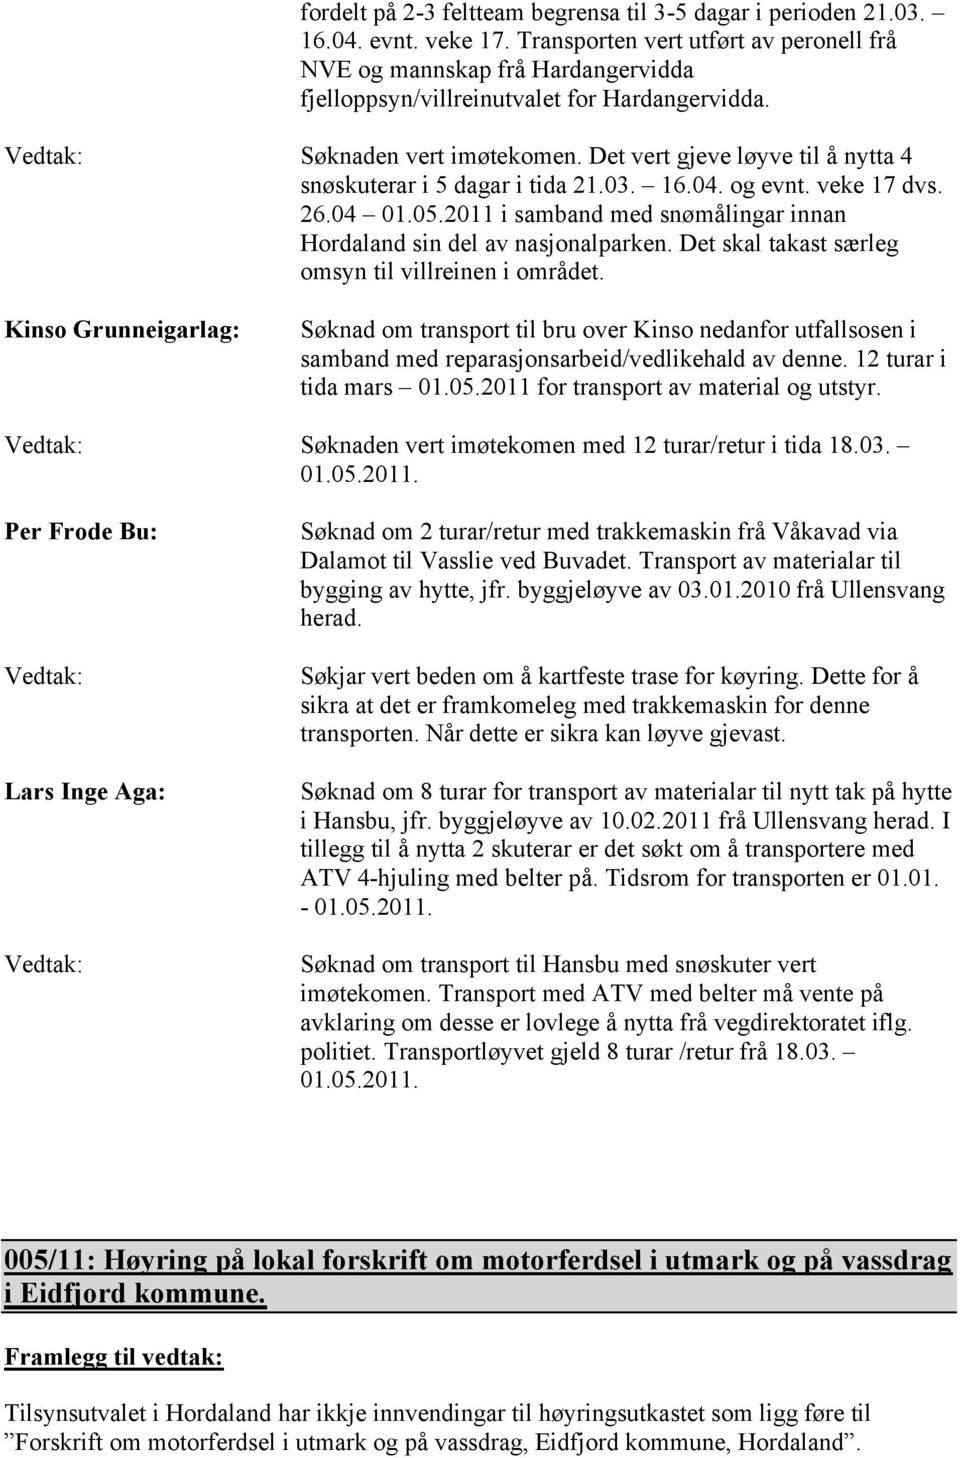 Det vert gjeve løyve til å nytta 4 snøskuterar i 5 dagar i tida 21.03. 16.04. og evnt. veke 17 dvs. 26.04 01.05.2011 i samband med snømålingar innan Hordaland sin del av nasjonalparken.